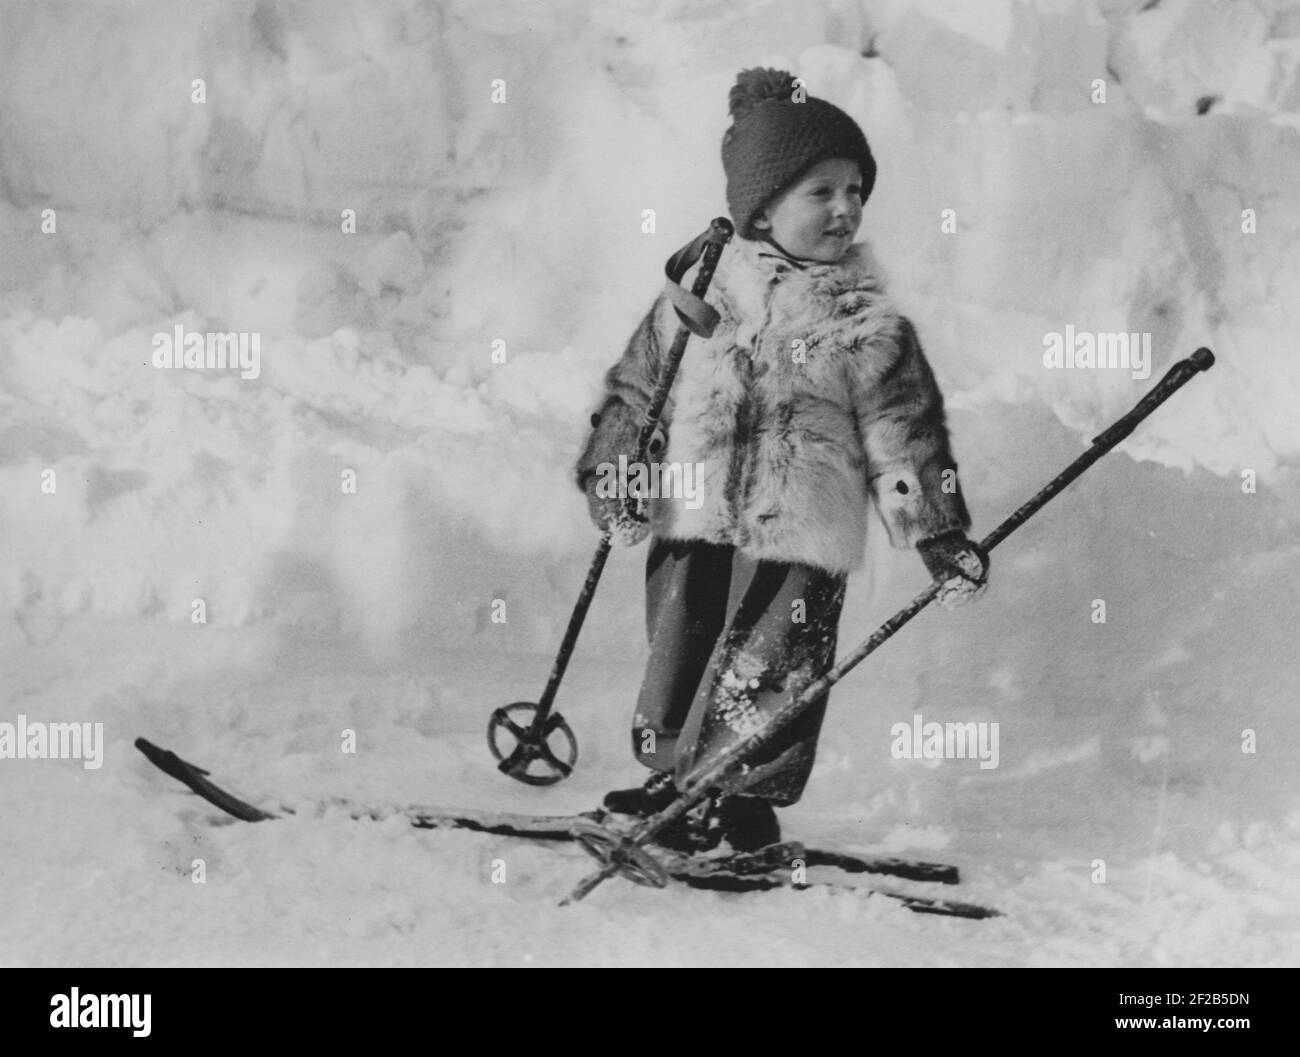 Roi Harald de Norvège. Photographié lorsqu'il est prince héritier et jeune garçon à skis, un jour d'hiver. 1940 Banque D'Images